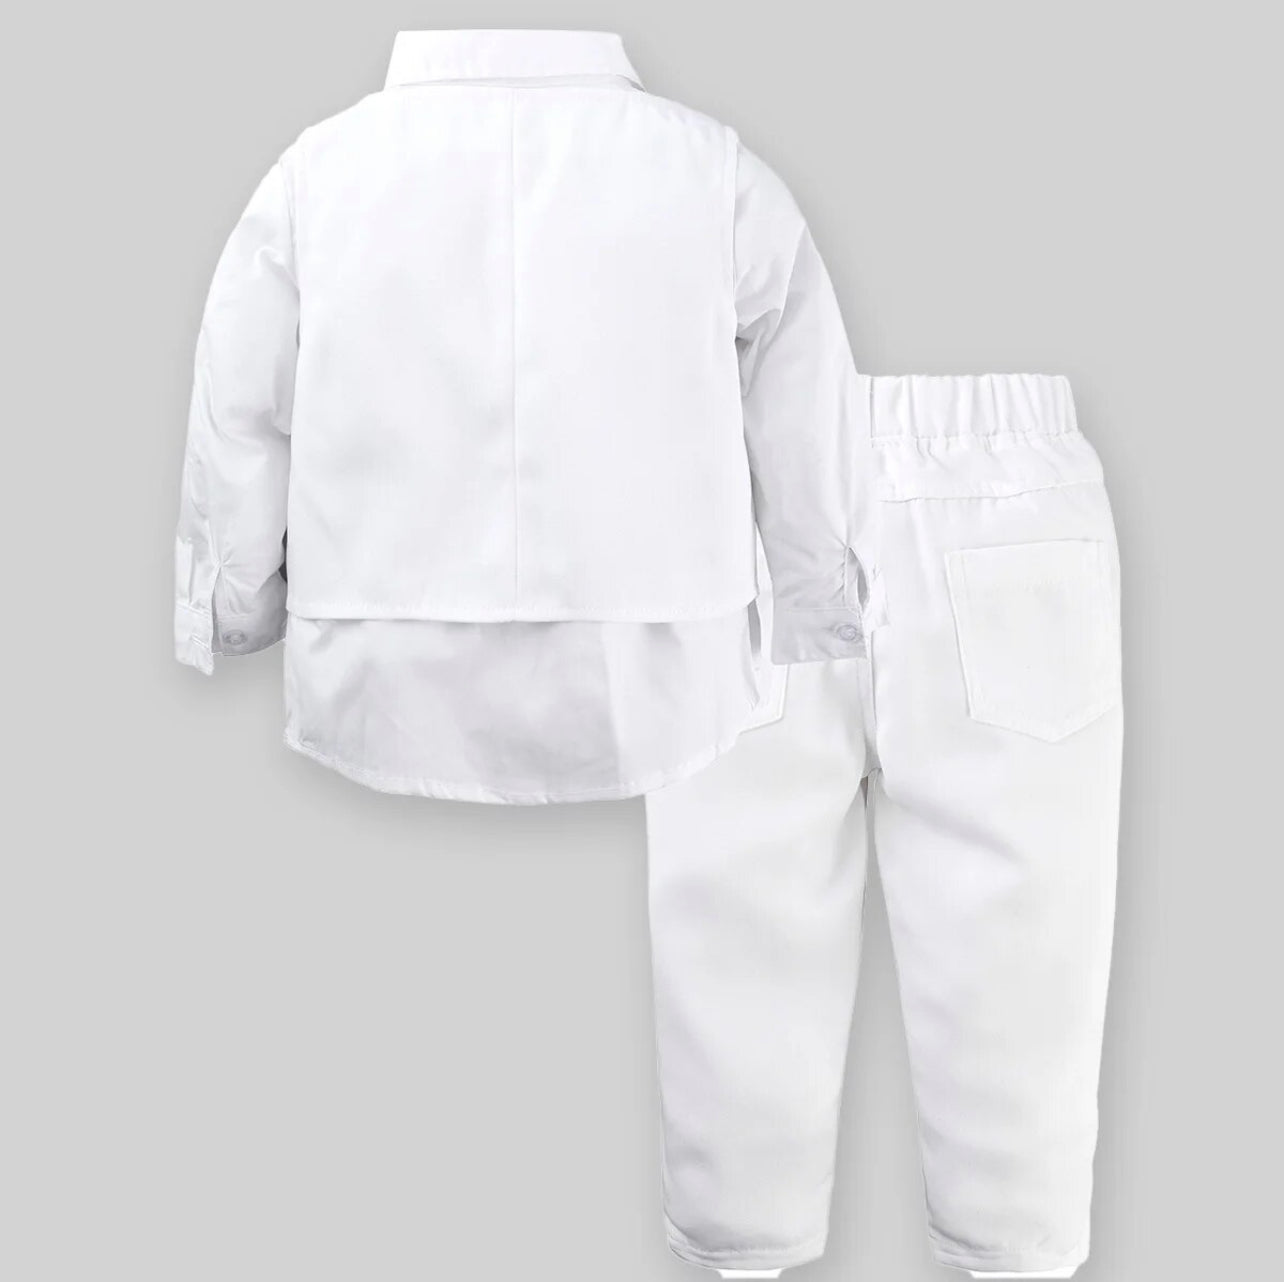 4 Piece Set, Formal Suit,Outfit for Boy’s, Vest Shirt Pants Hat